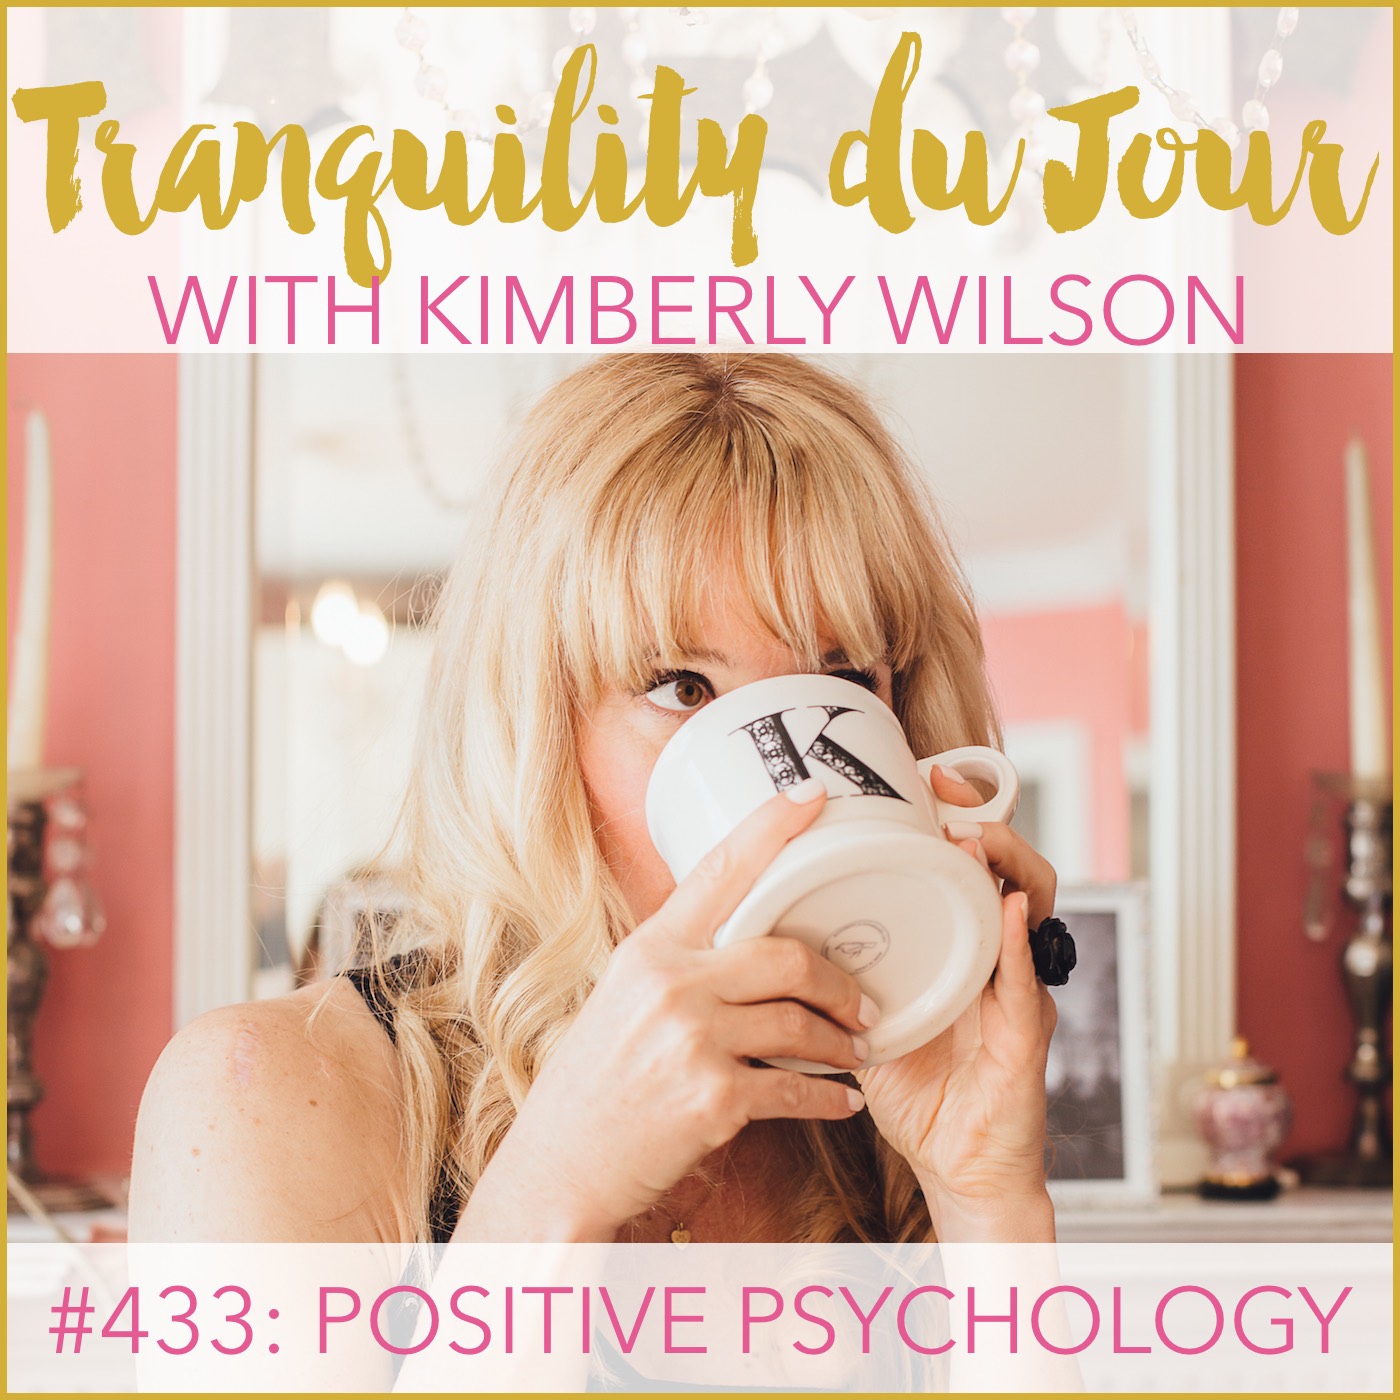 Tranquility du Jour #433: Positive Psychology